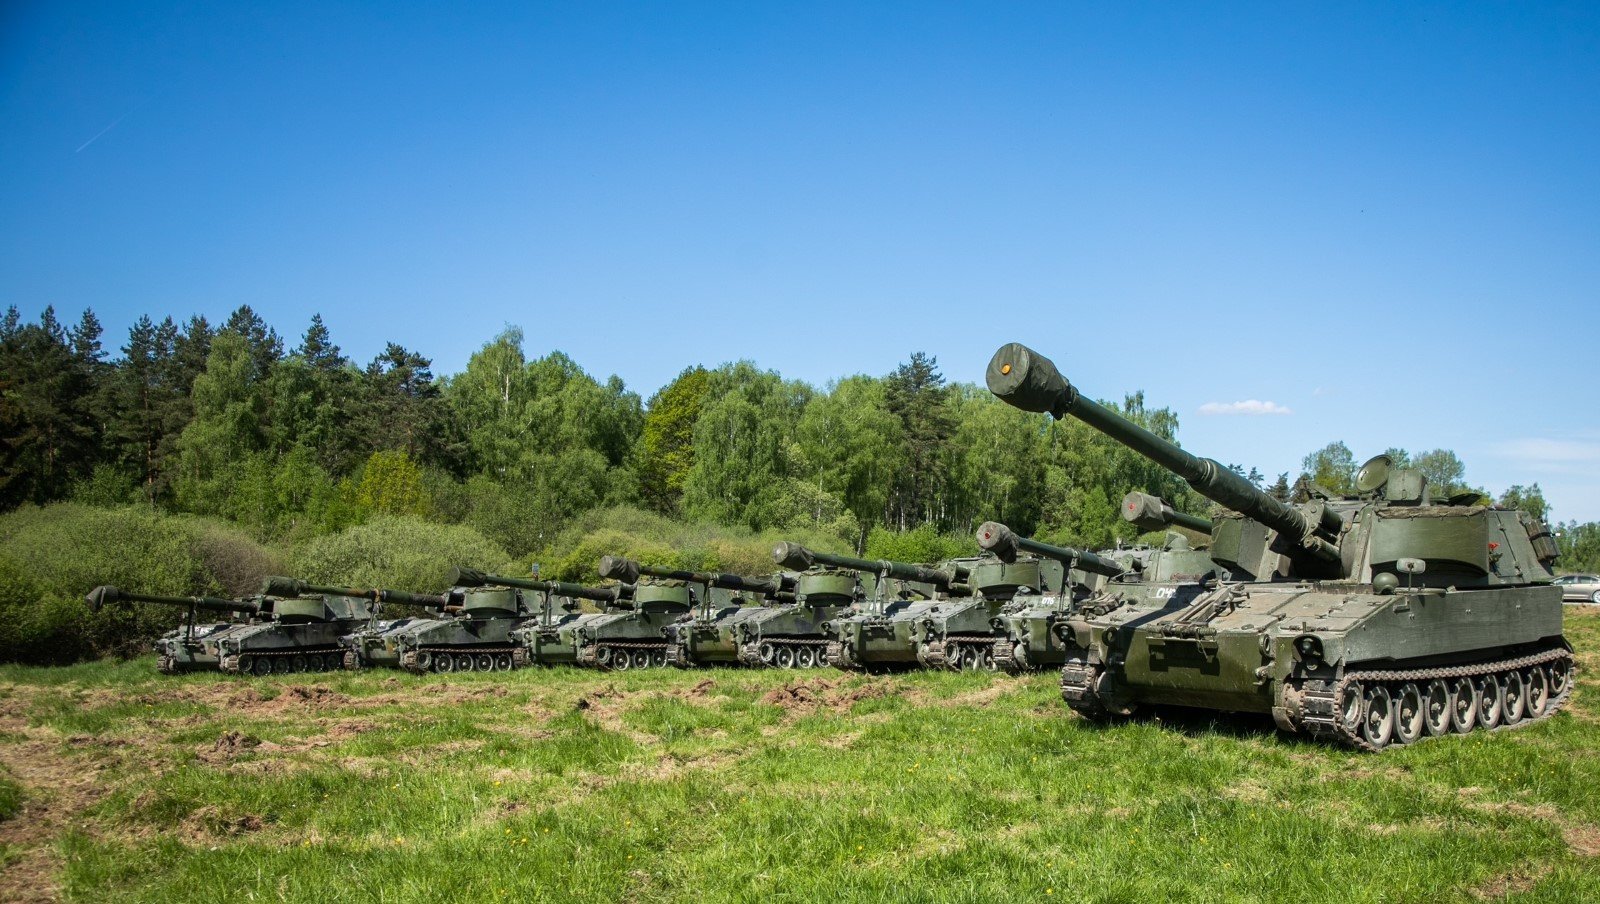 La Norvegia ha consegnato 22 cannoni semoventi M109 all'Ucraina, che possono sparare fino a 30 km